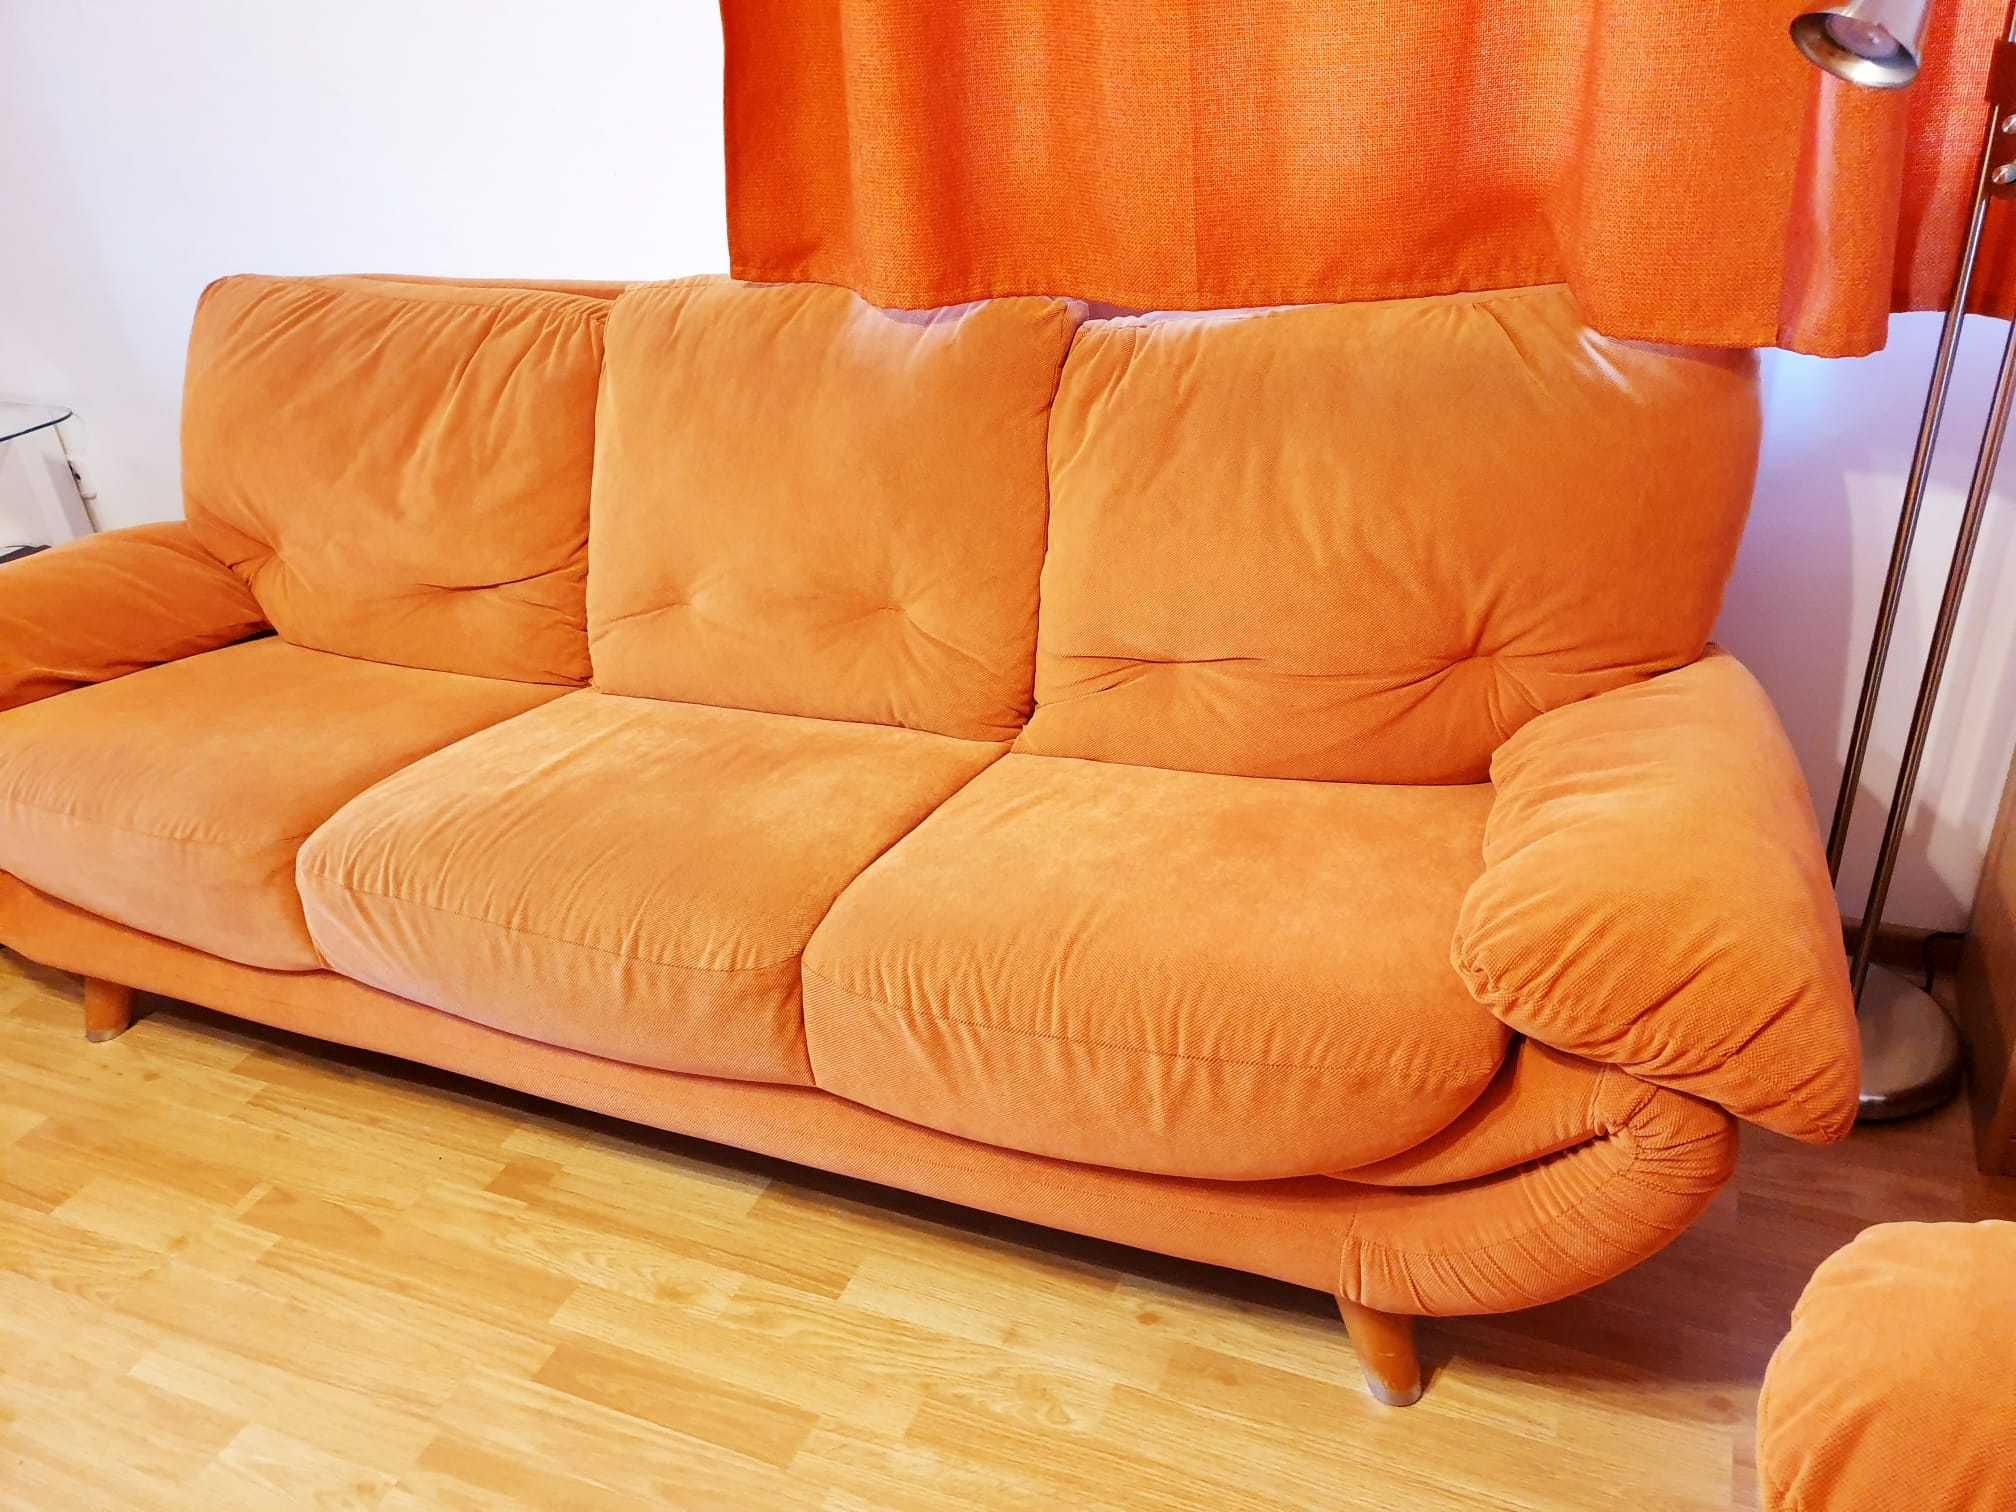 Canapea fixa si fotoliu